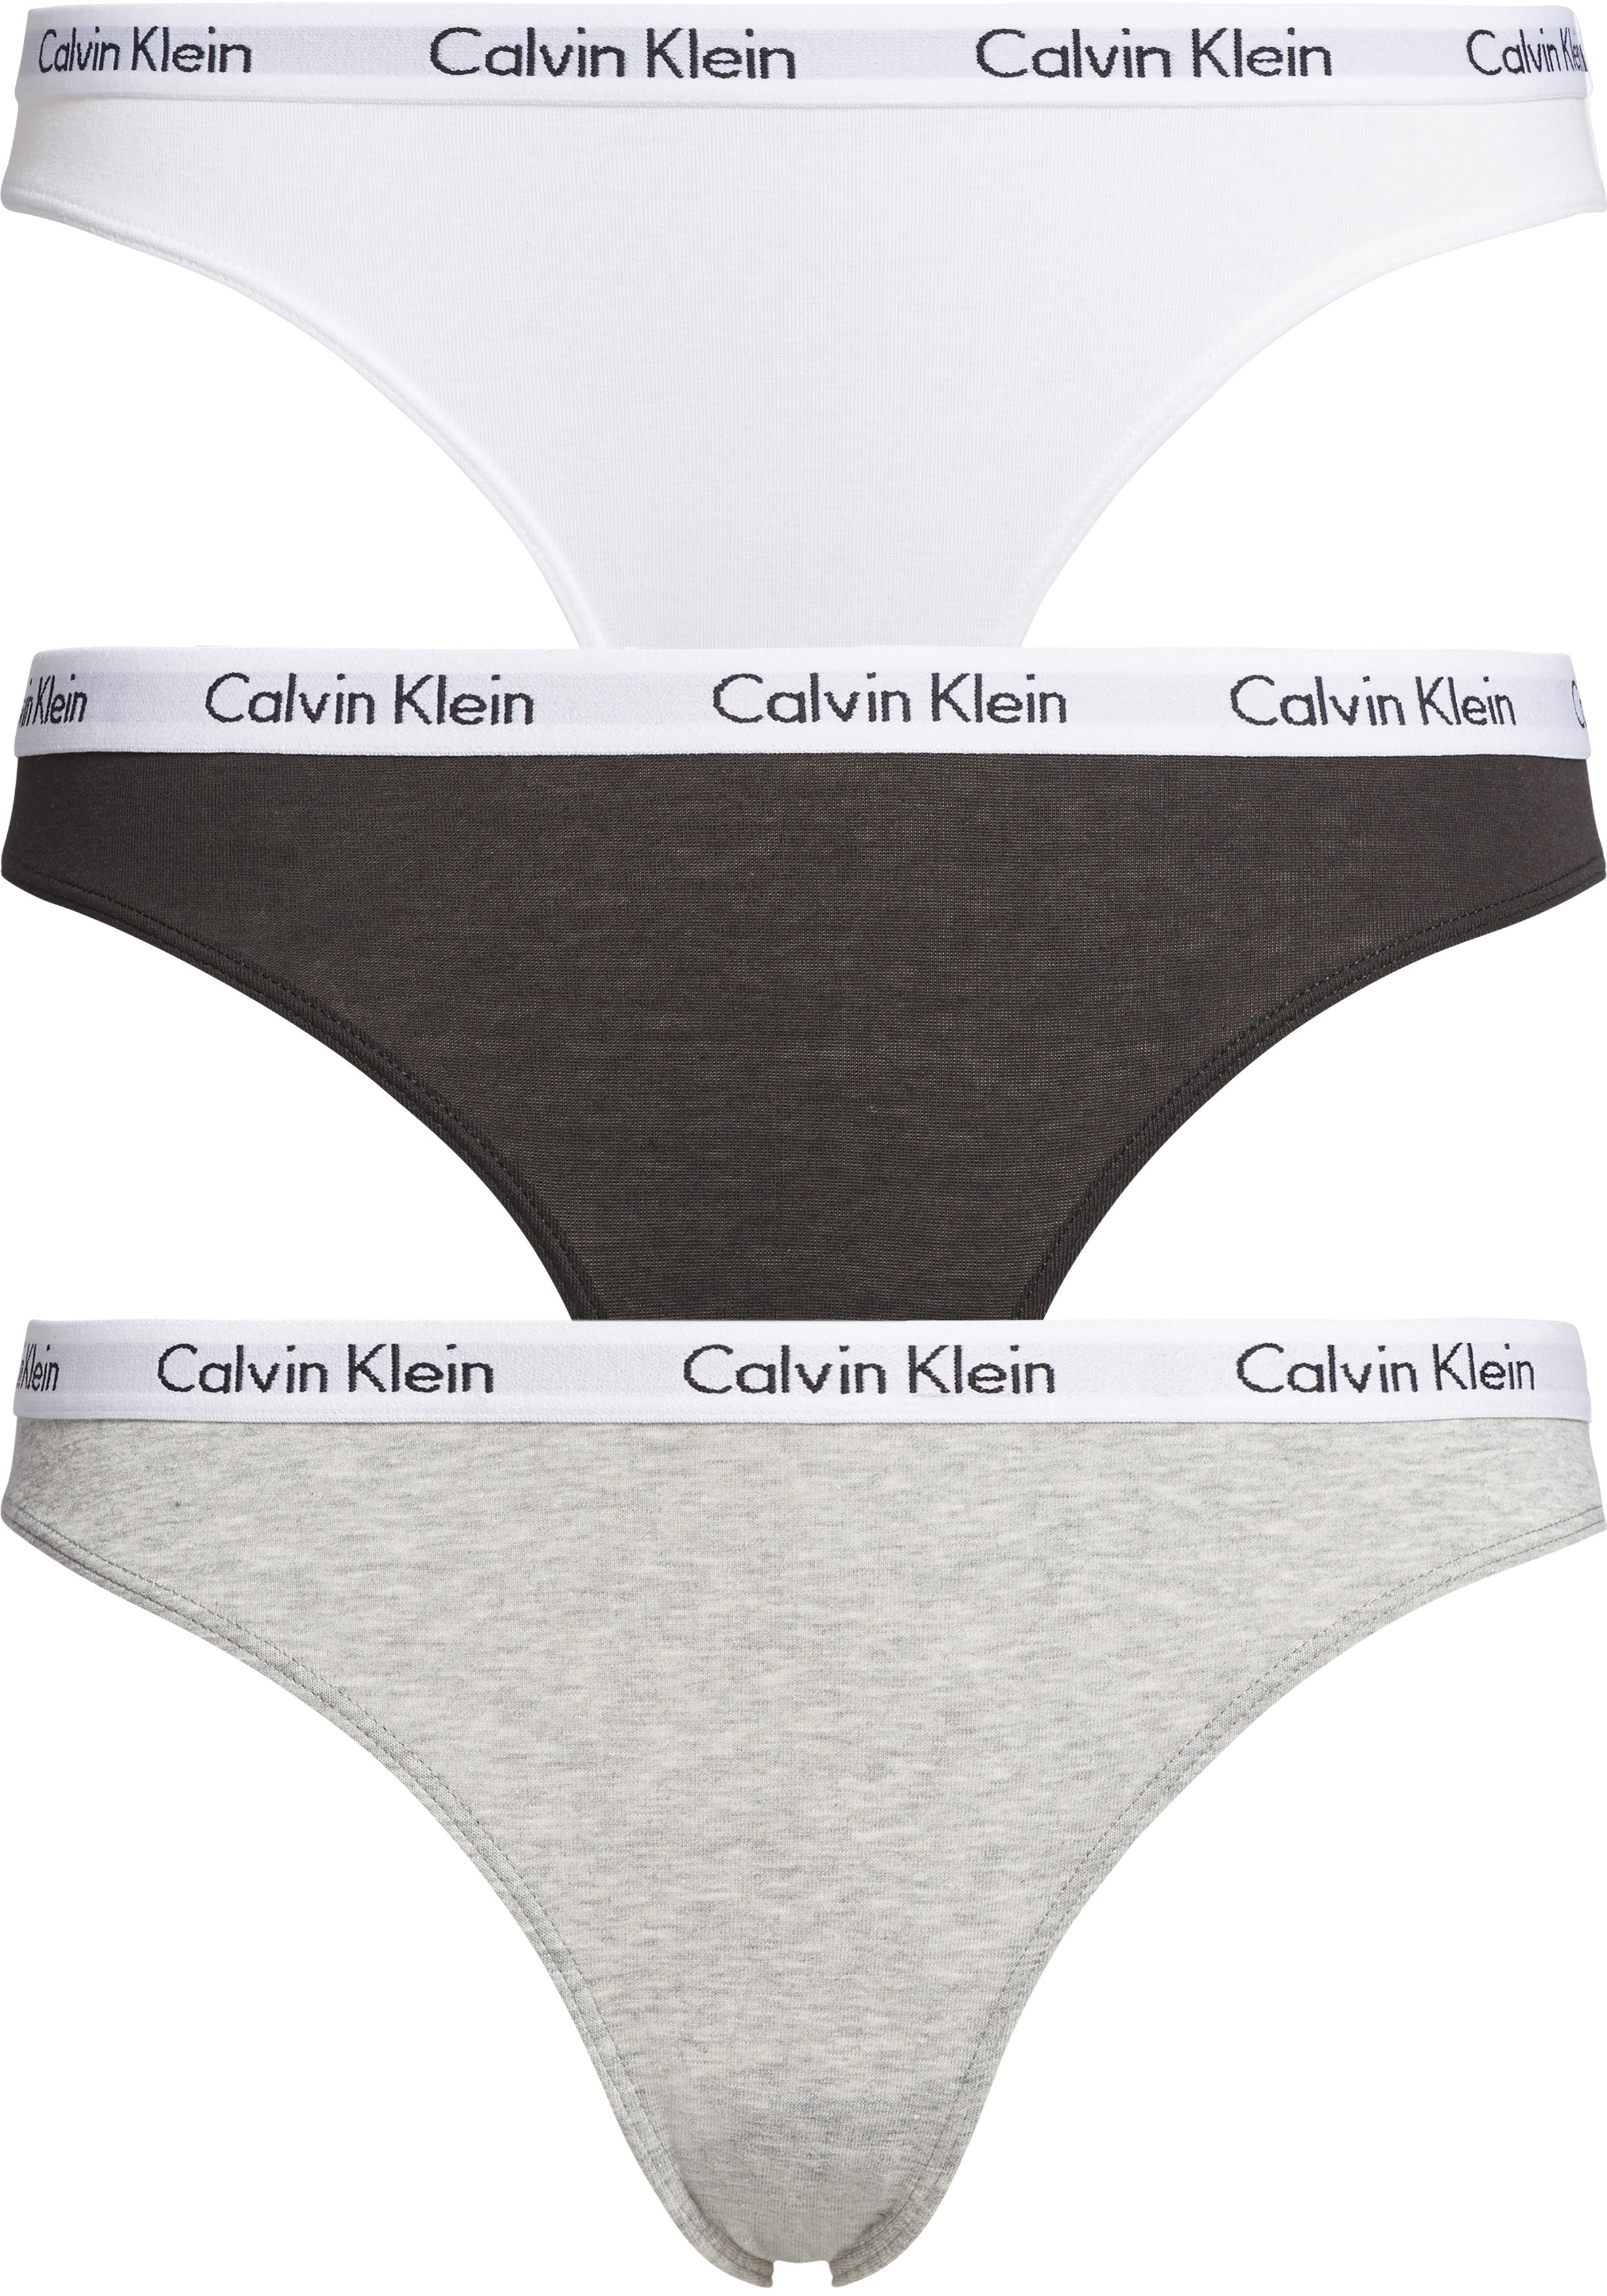 in stand houden ironie Spreekwoord Calvin Klein dames slips (3-pack), zwart, wit en grijs - Shop de nieuwste  voorjaarsmode